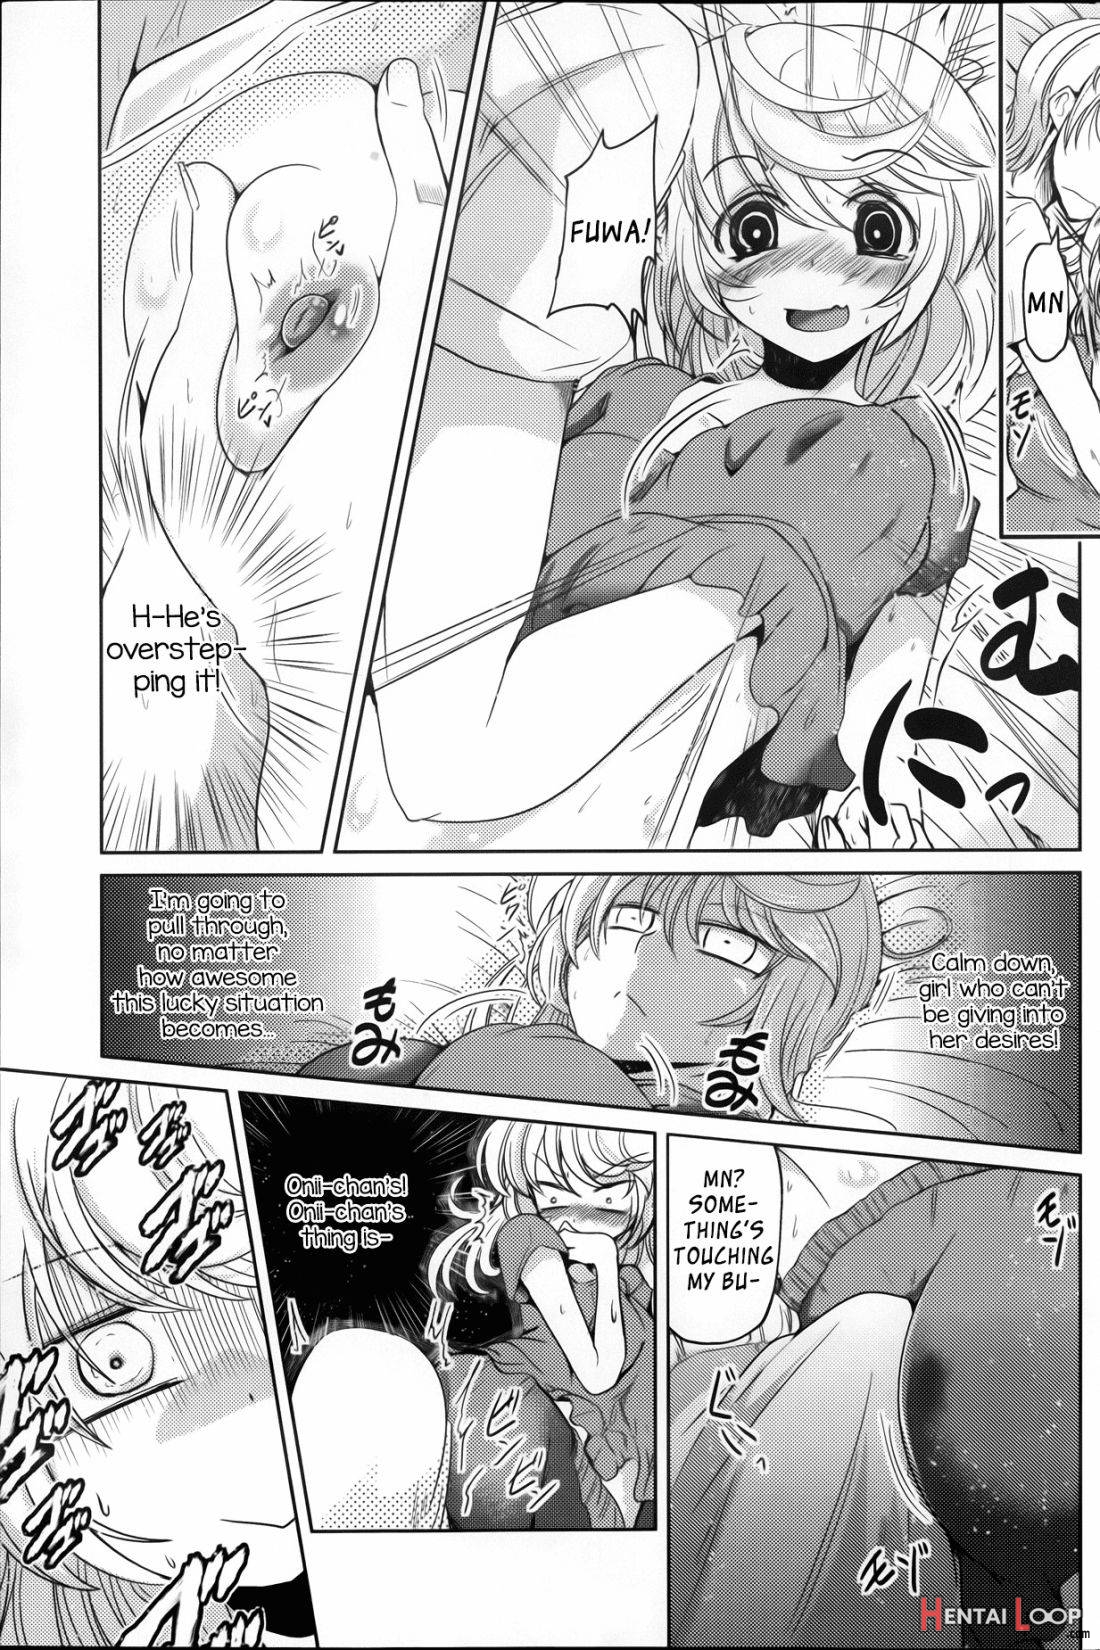 Yumemigokochi page 7